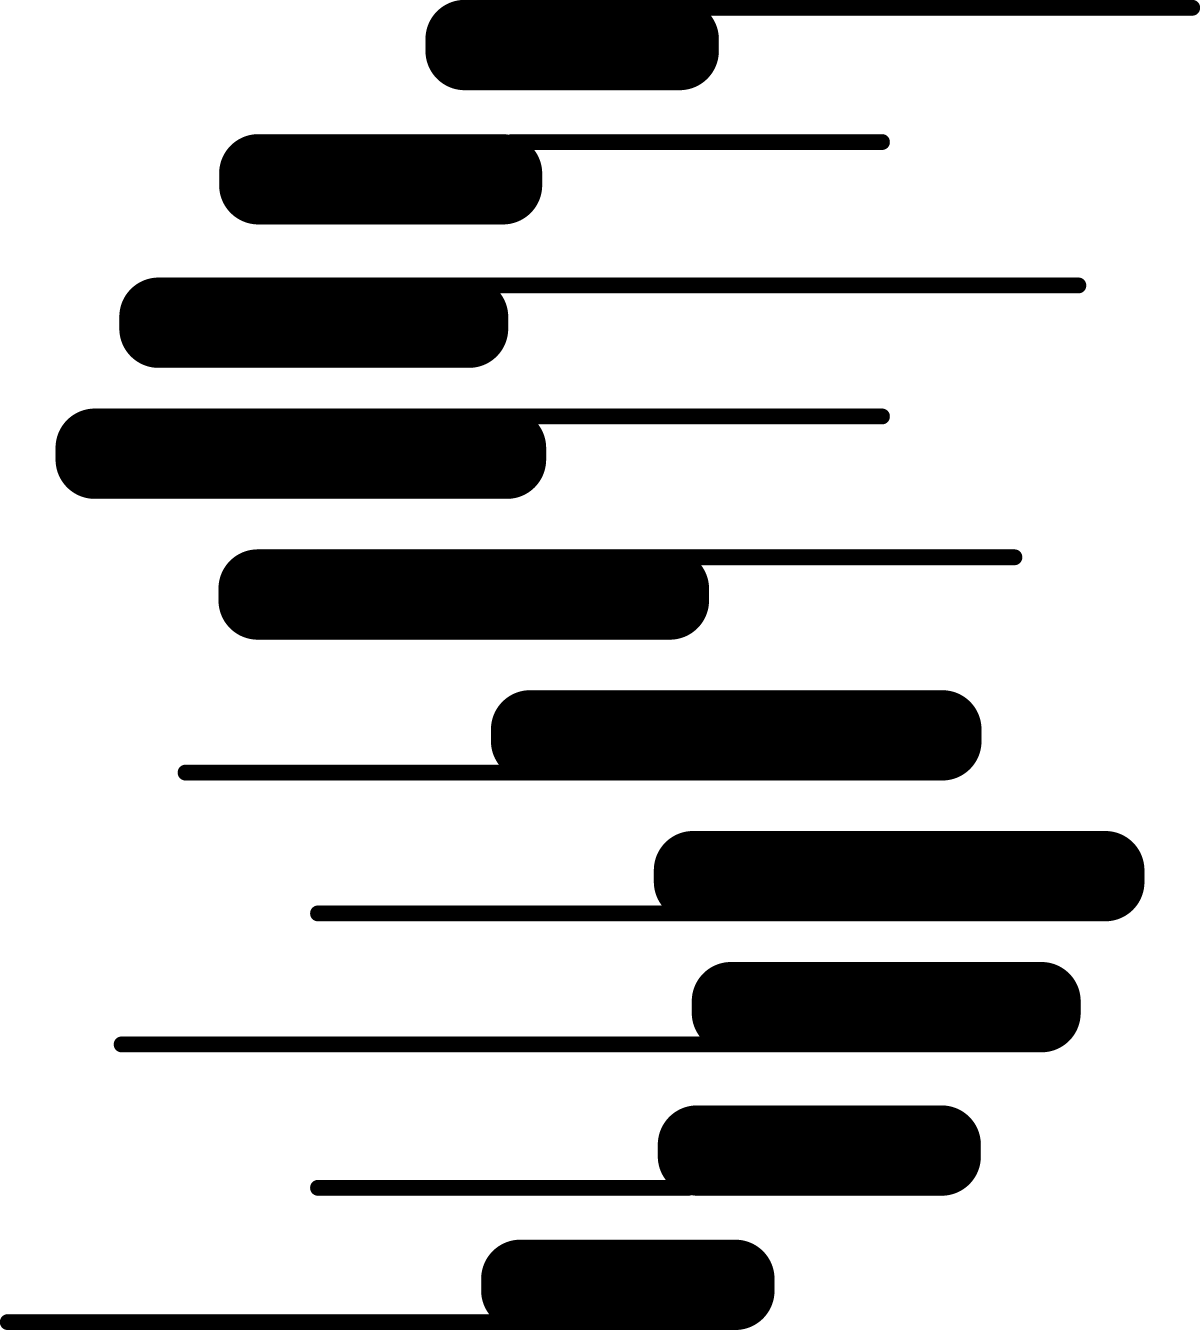 La Soprano Logo